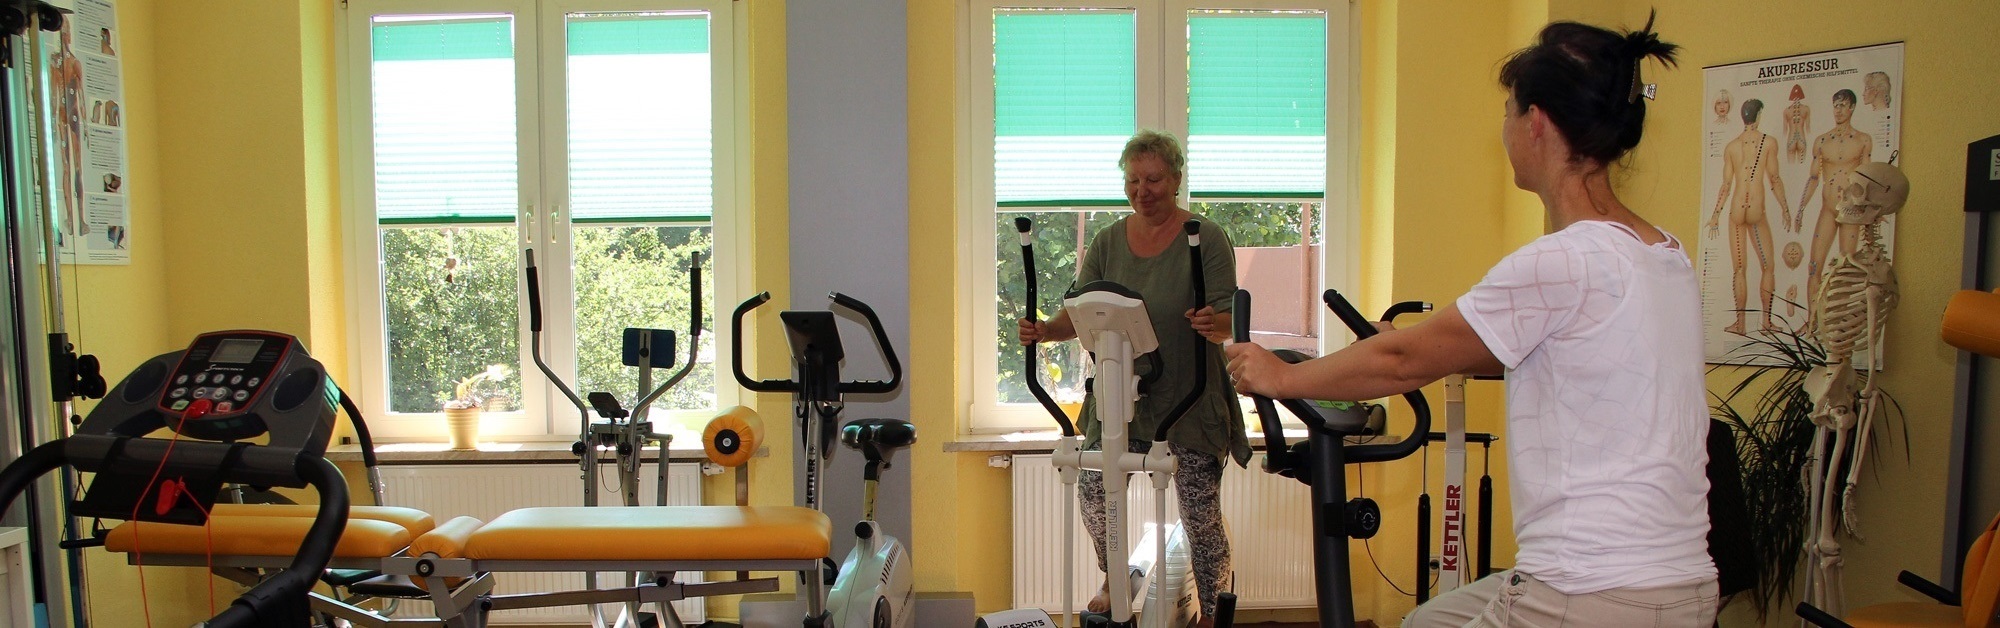 Physiotherapie Schönheide - Fitnessraum